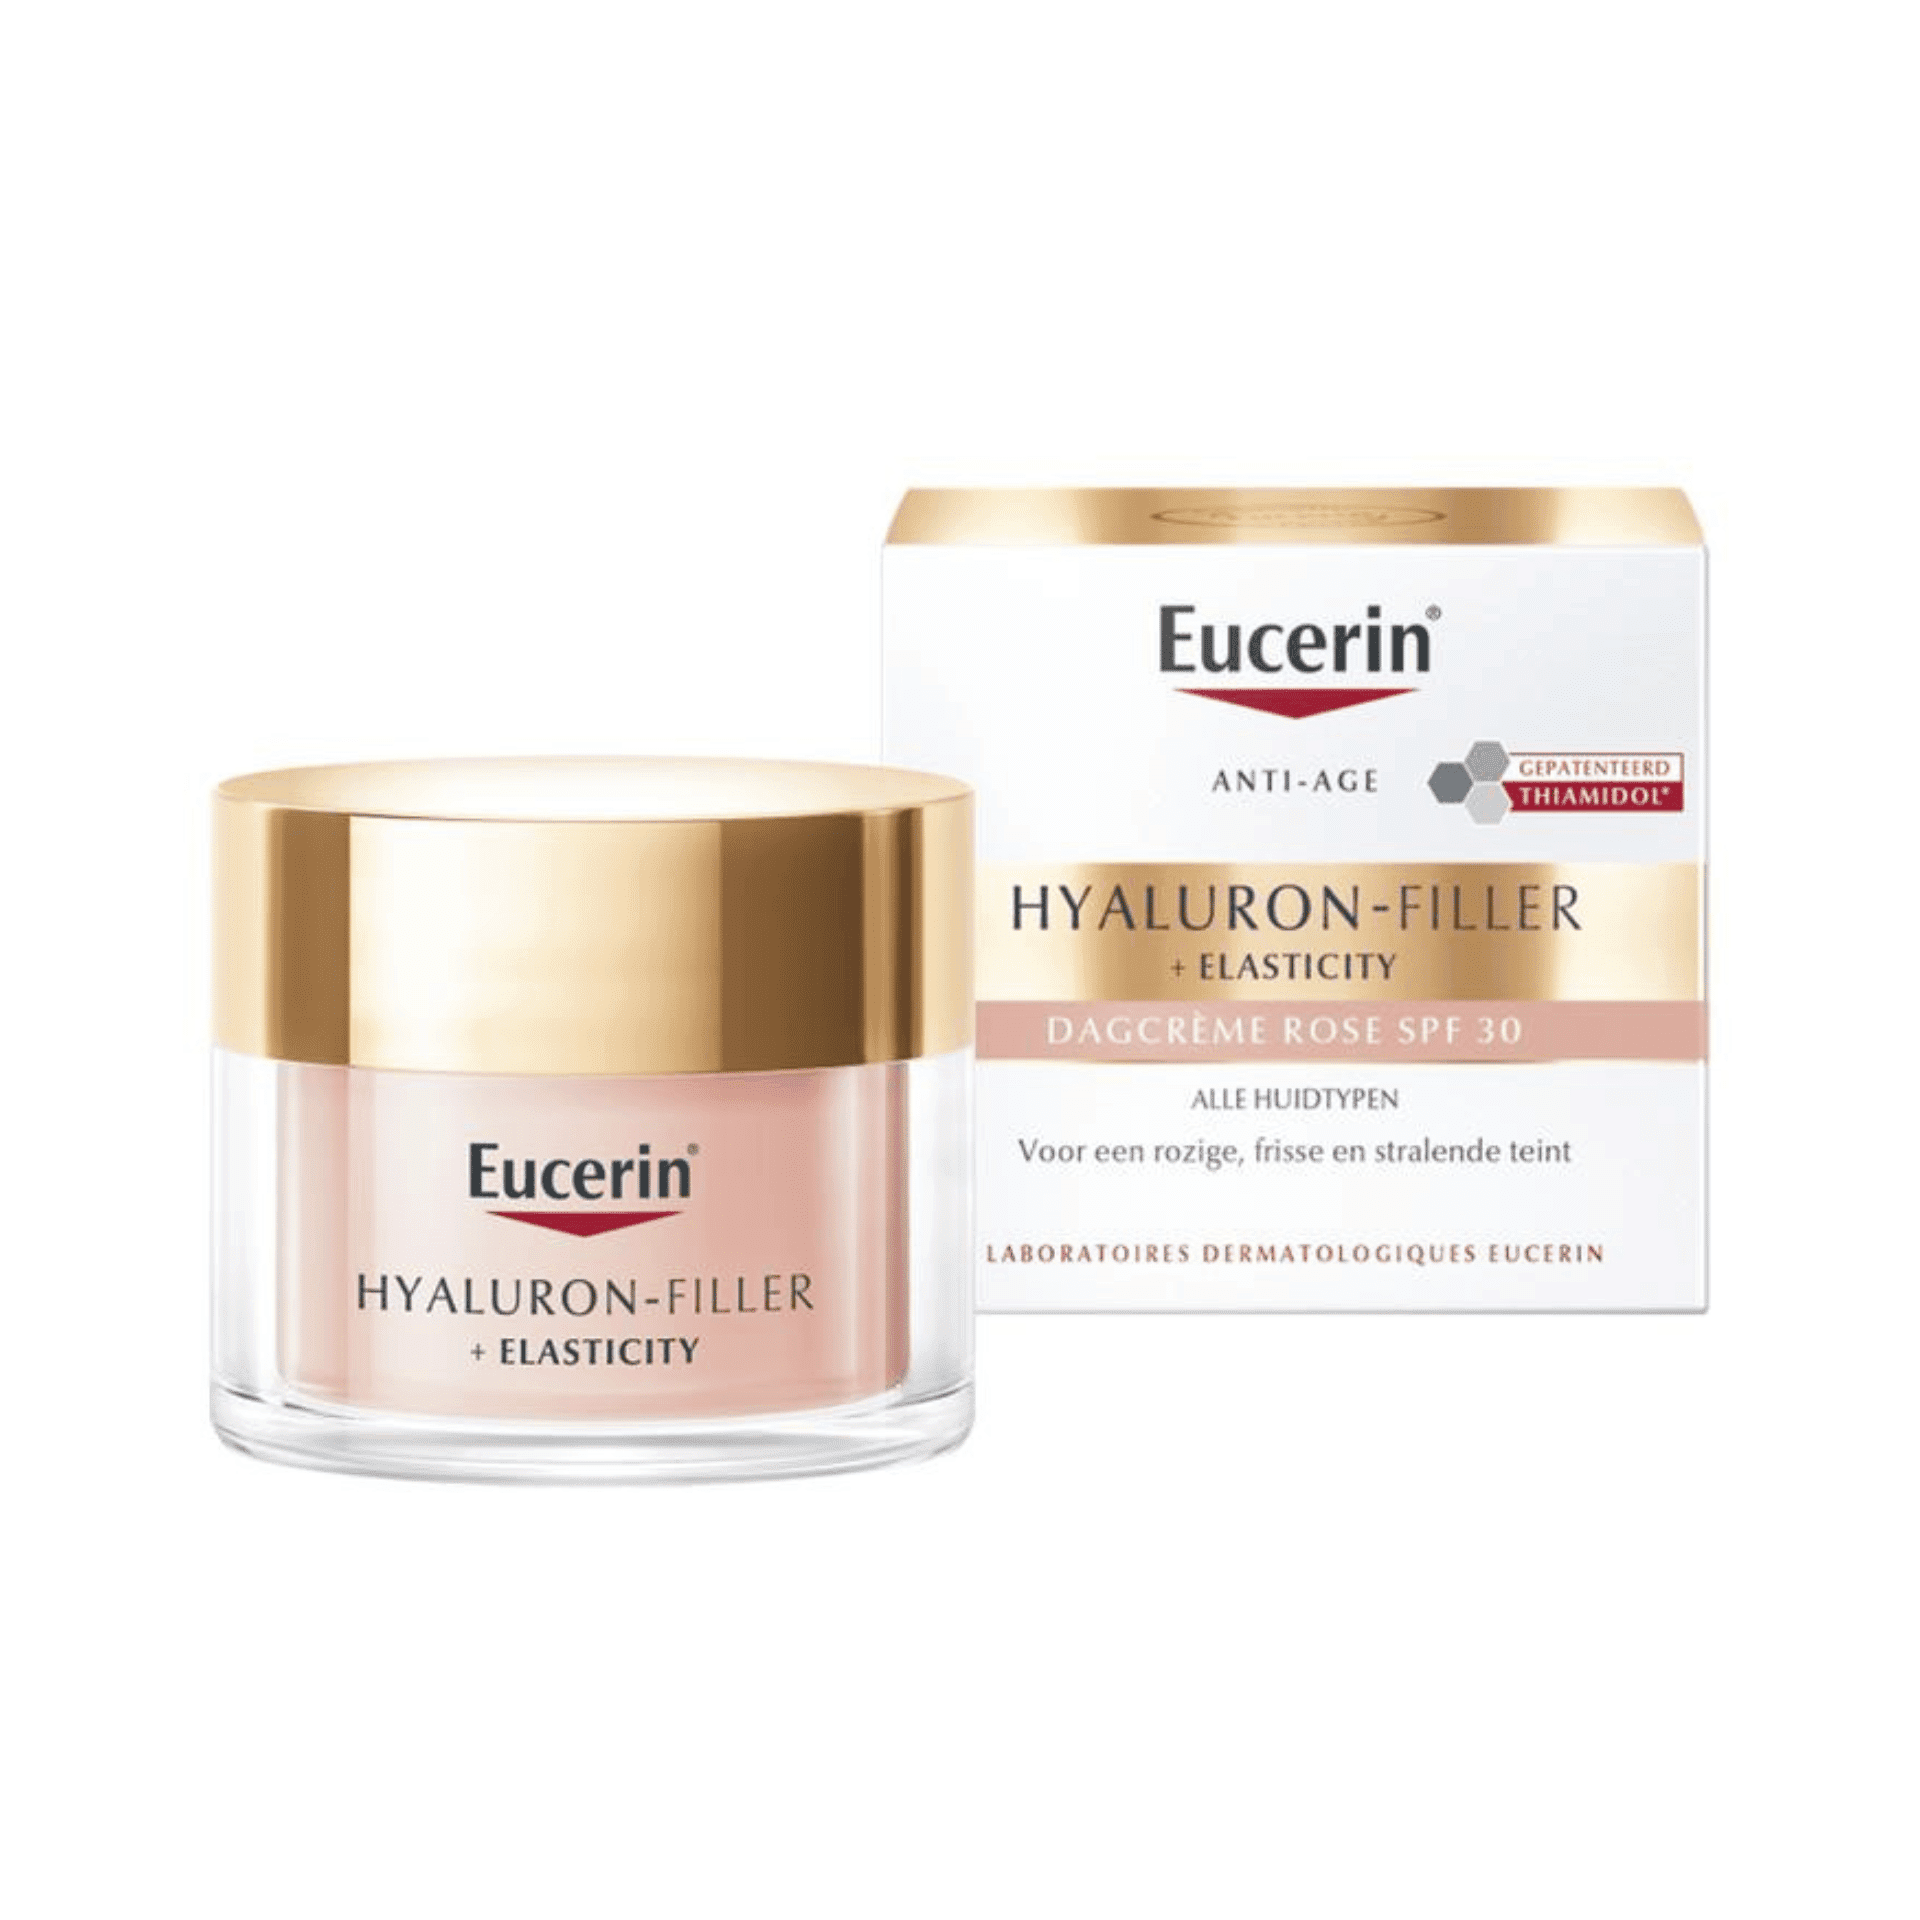 Eucerin Hyaluron-Filler + Elasticity Soin de Jour Rose SPF 30